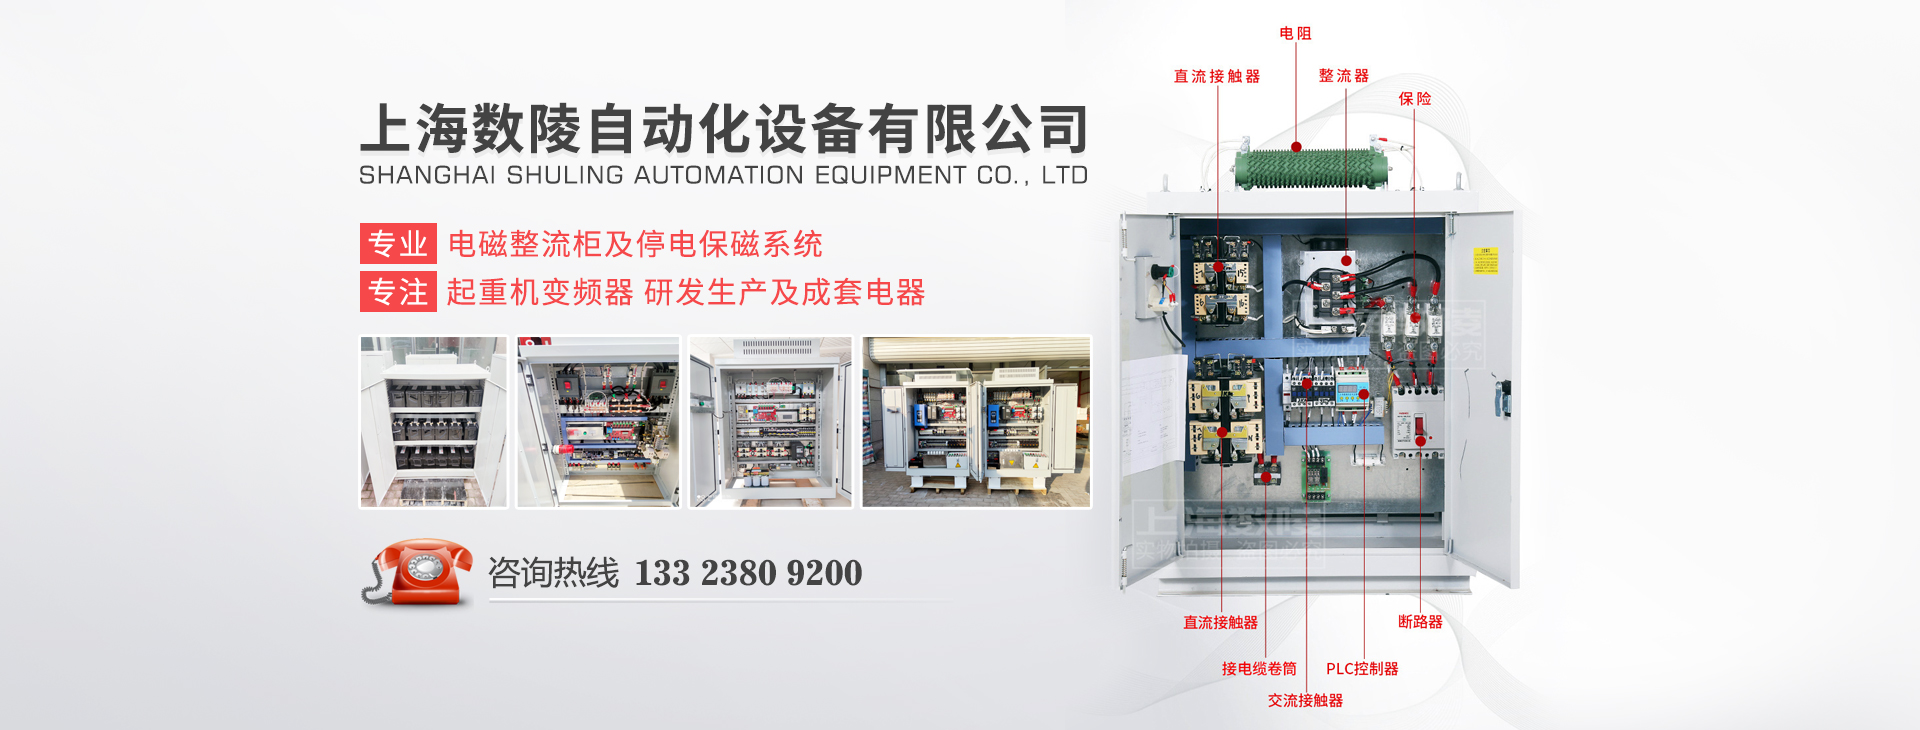 上海数陵自动化设备有限公司